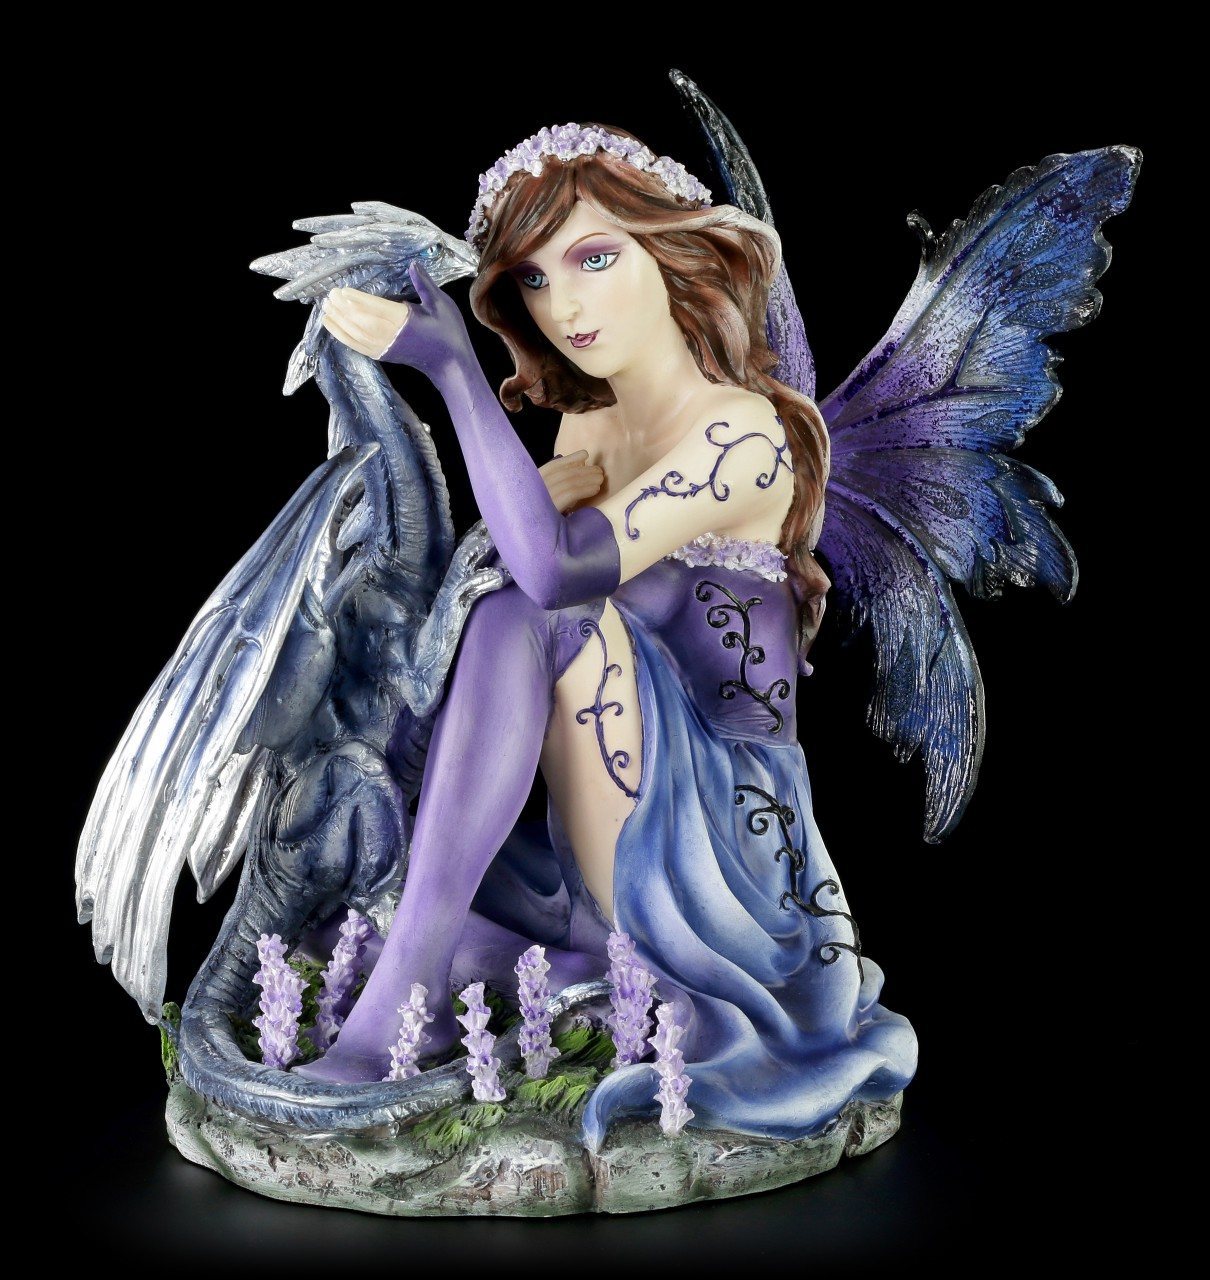 Fairy Figurine - Zyane plays with Dragon